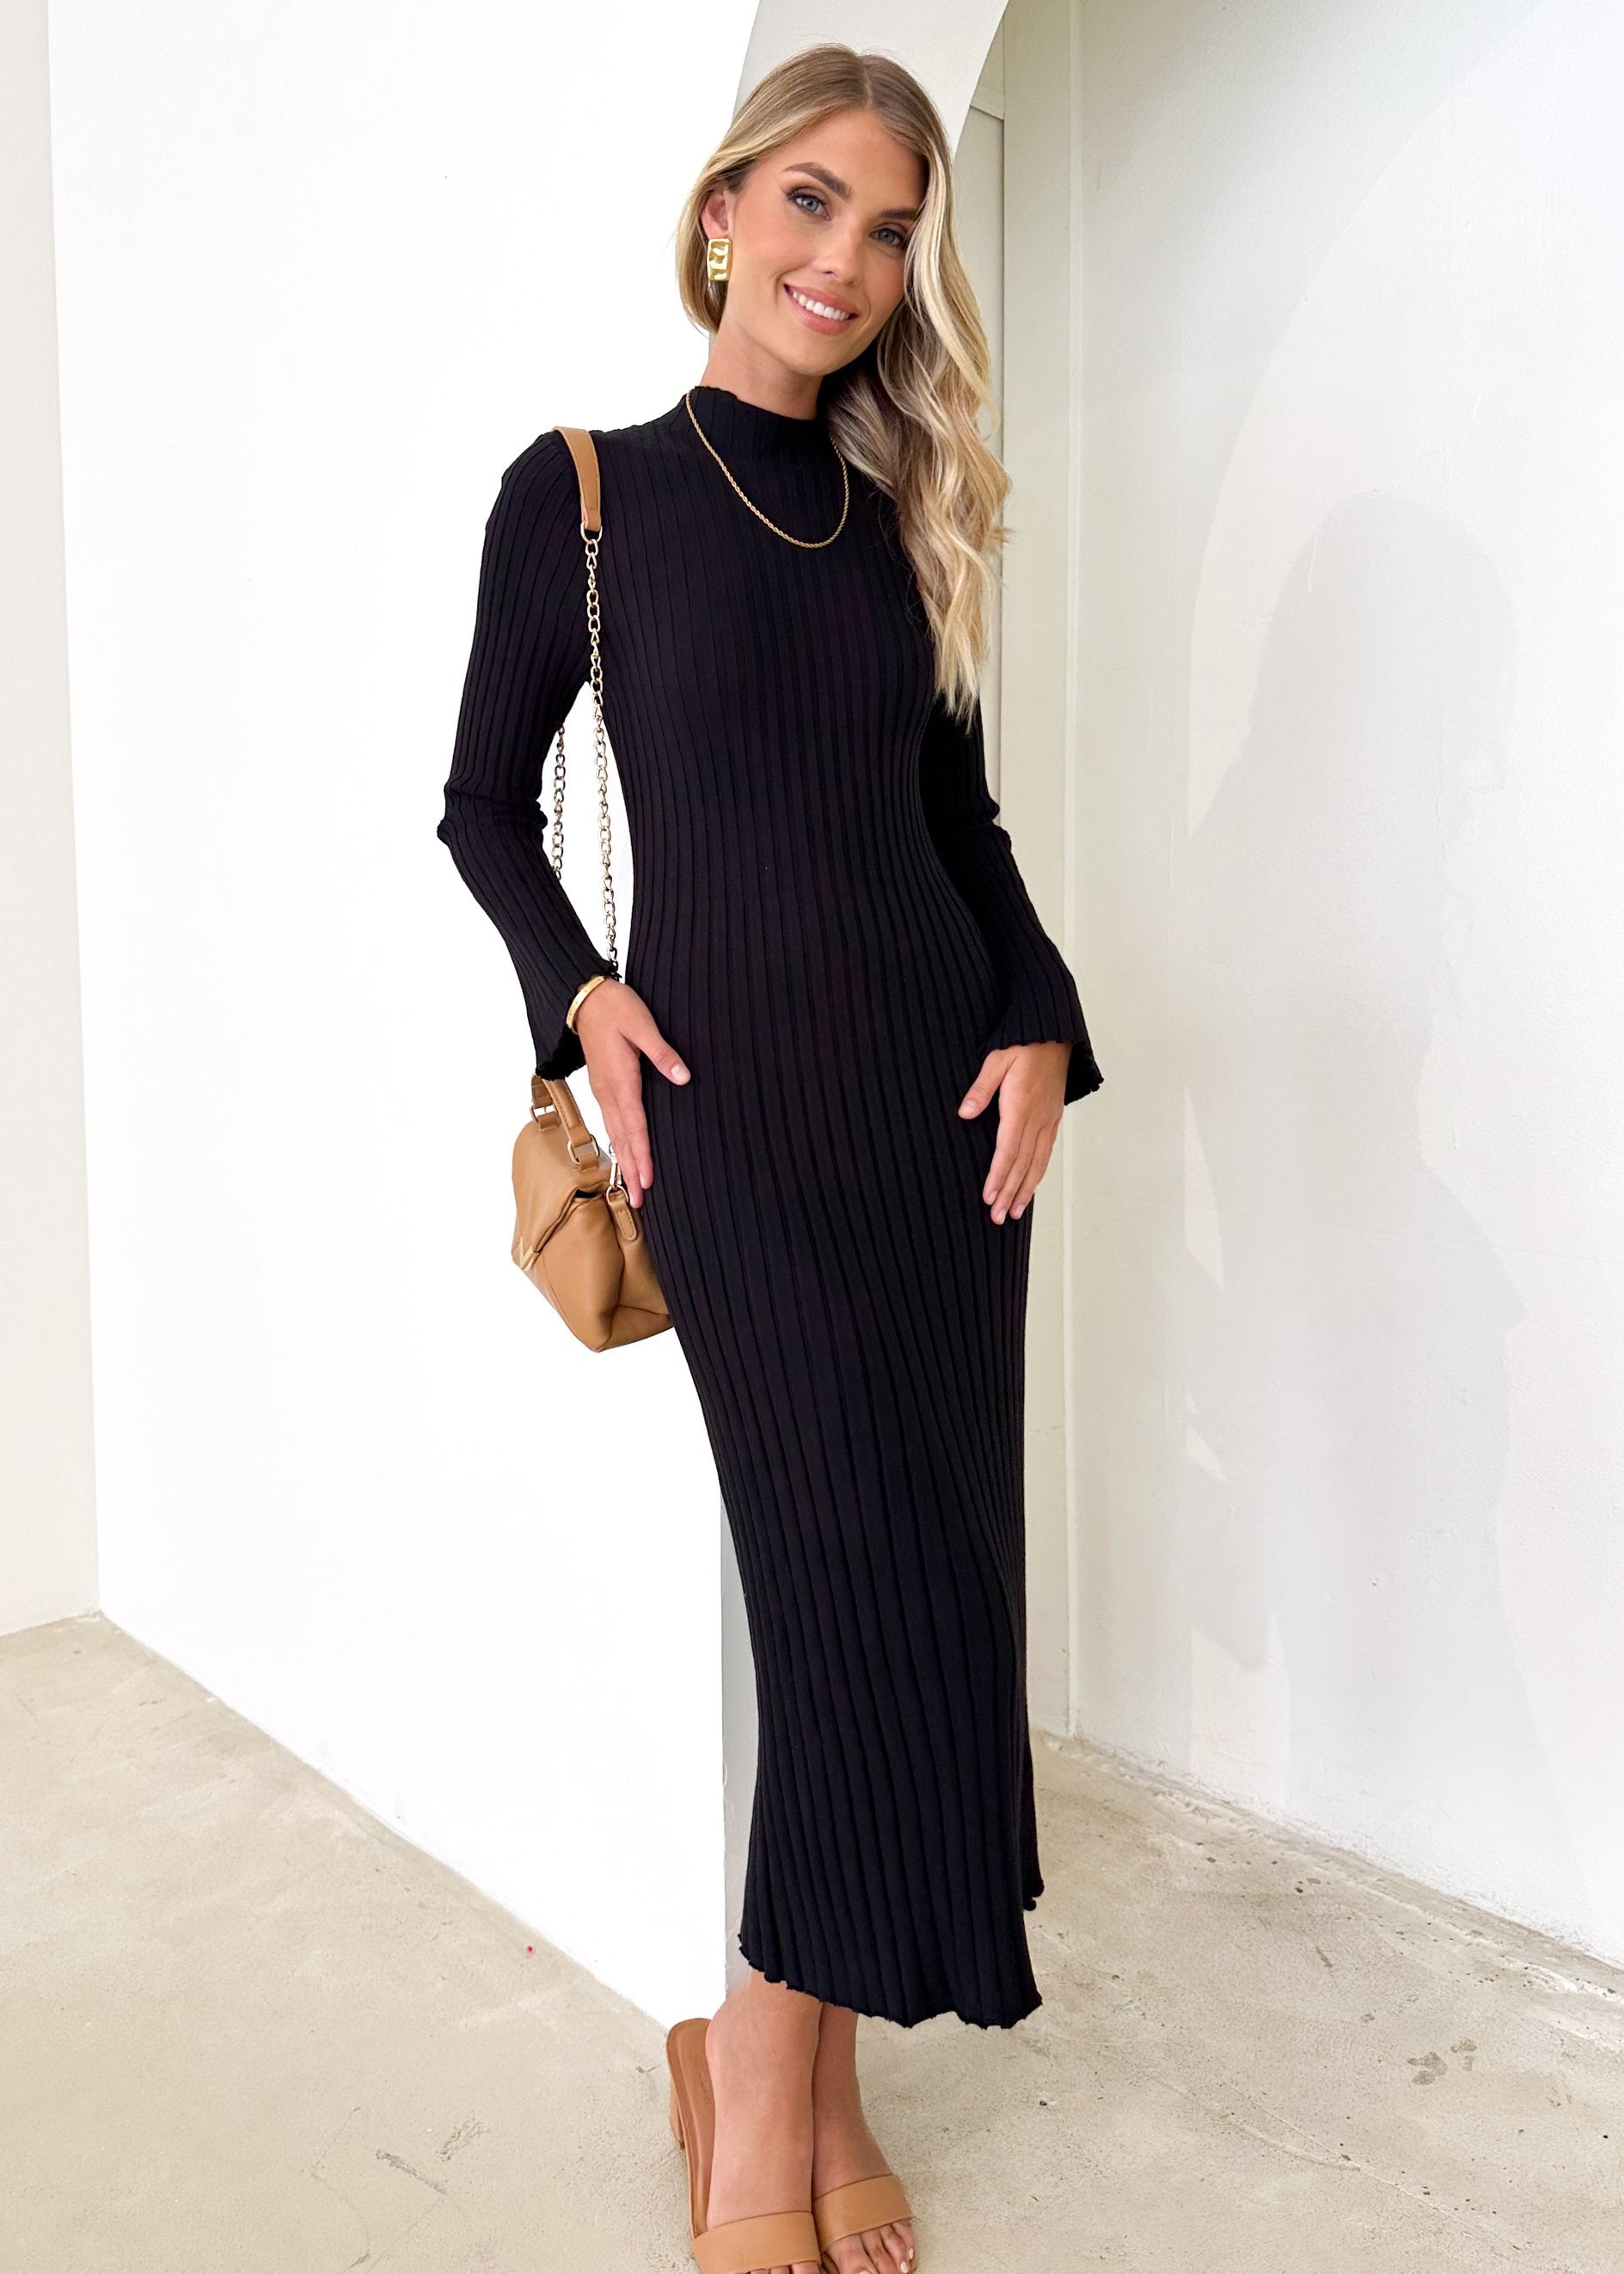 Wintra Knit Midi Dress - Black